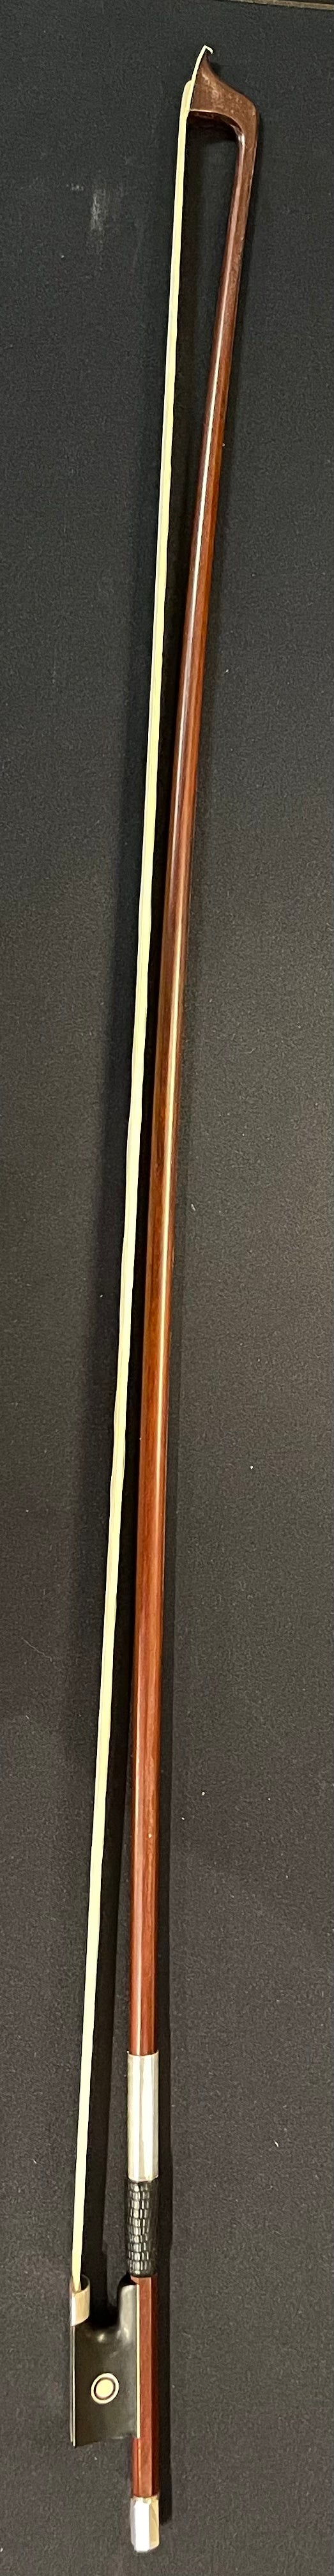 4/4 Violin Bow - DT28 Wood Model